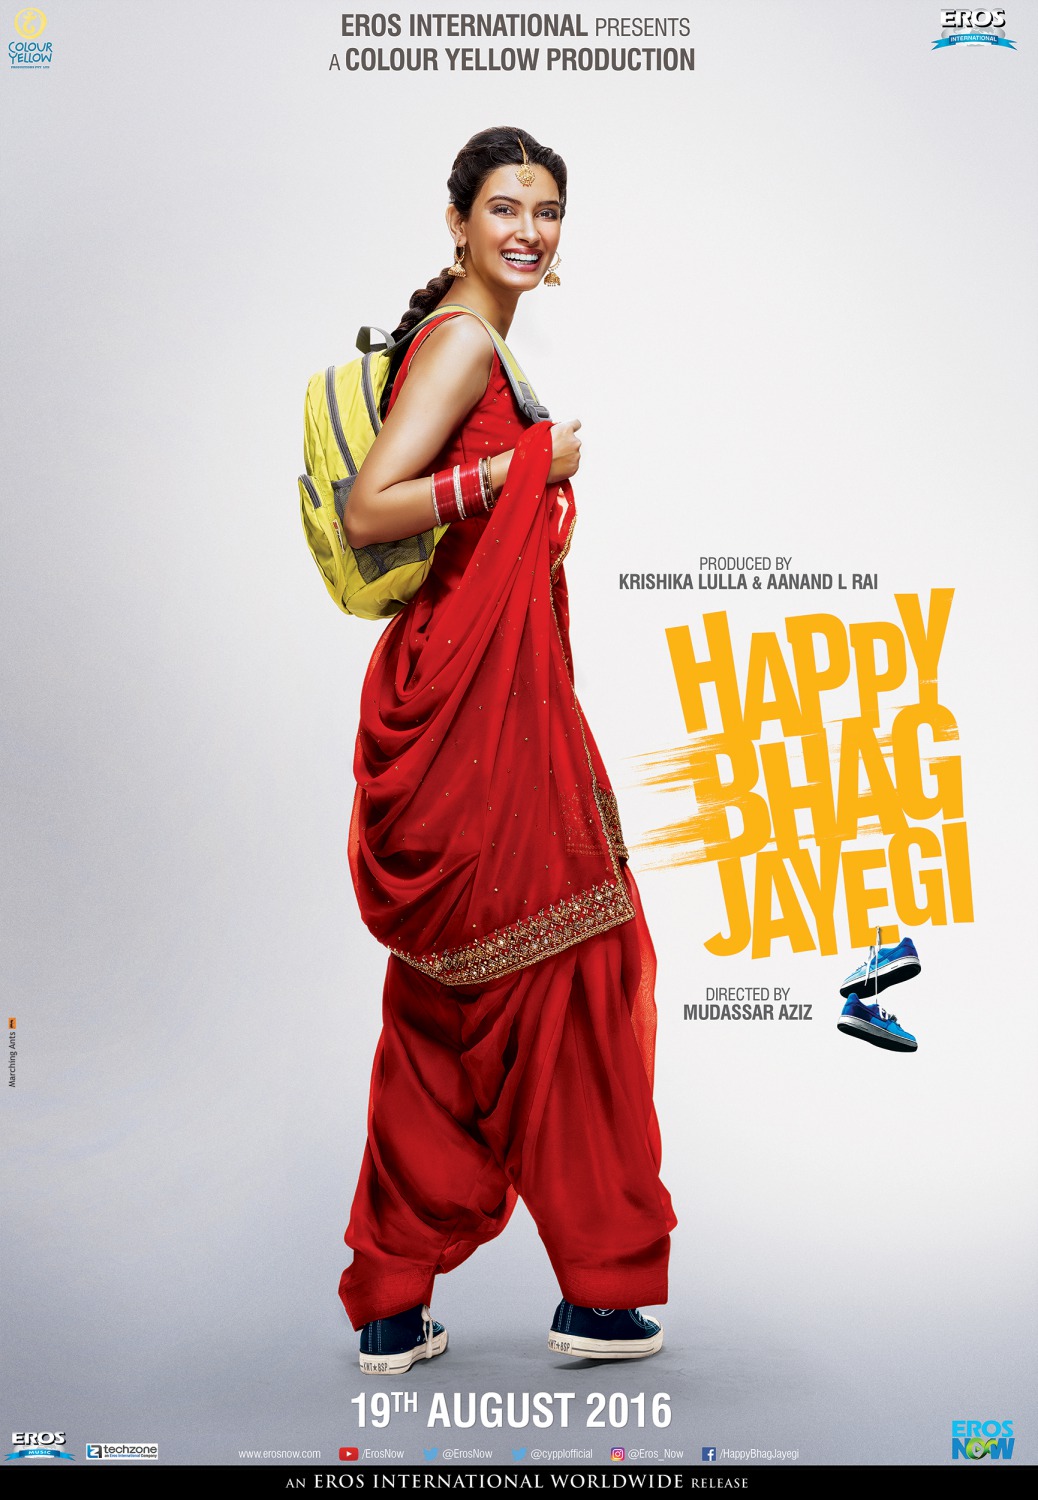 Extra Large Movie Poster Image for Happy Bhag Jayegi (#4 of 9)